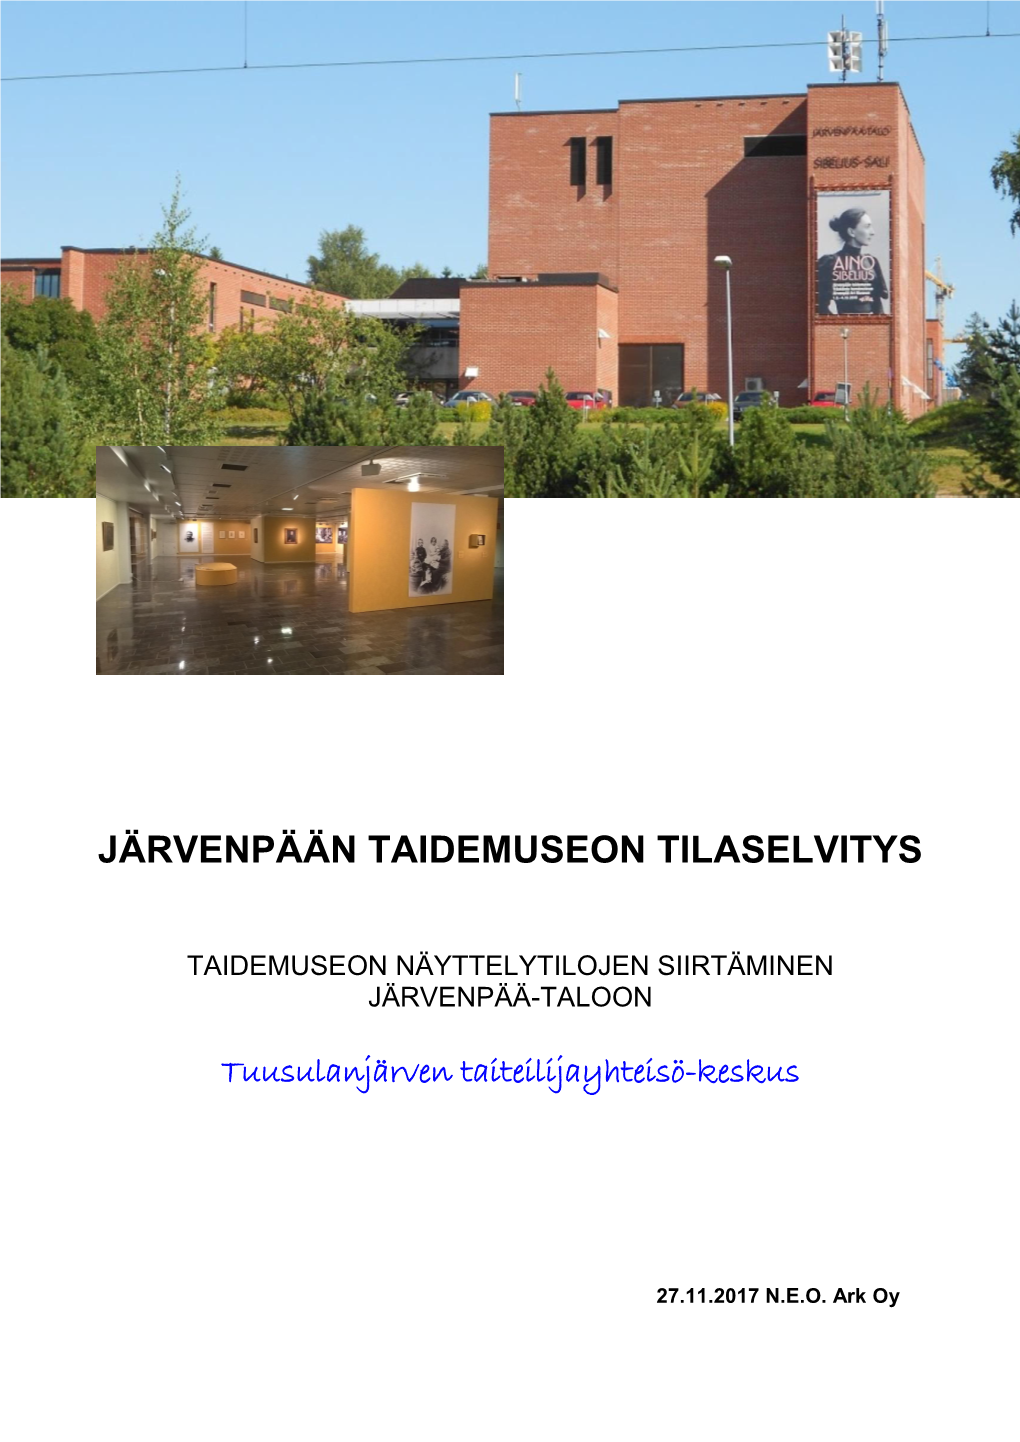 Järvenpään Taidemuseon Tilaselvitys